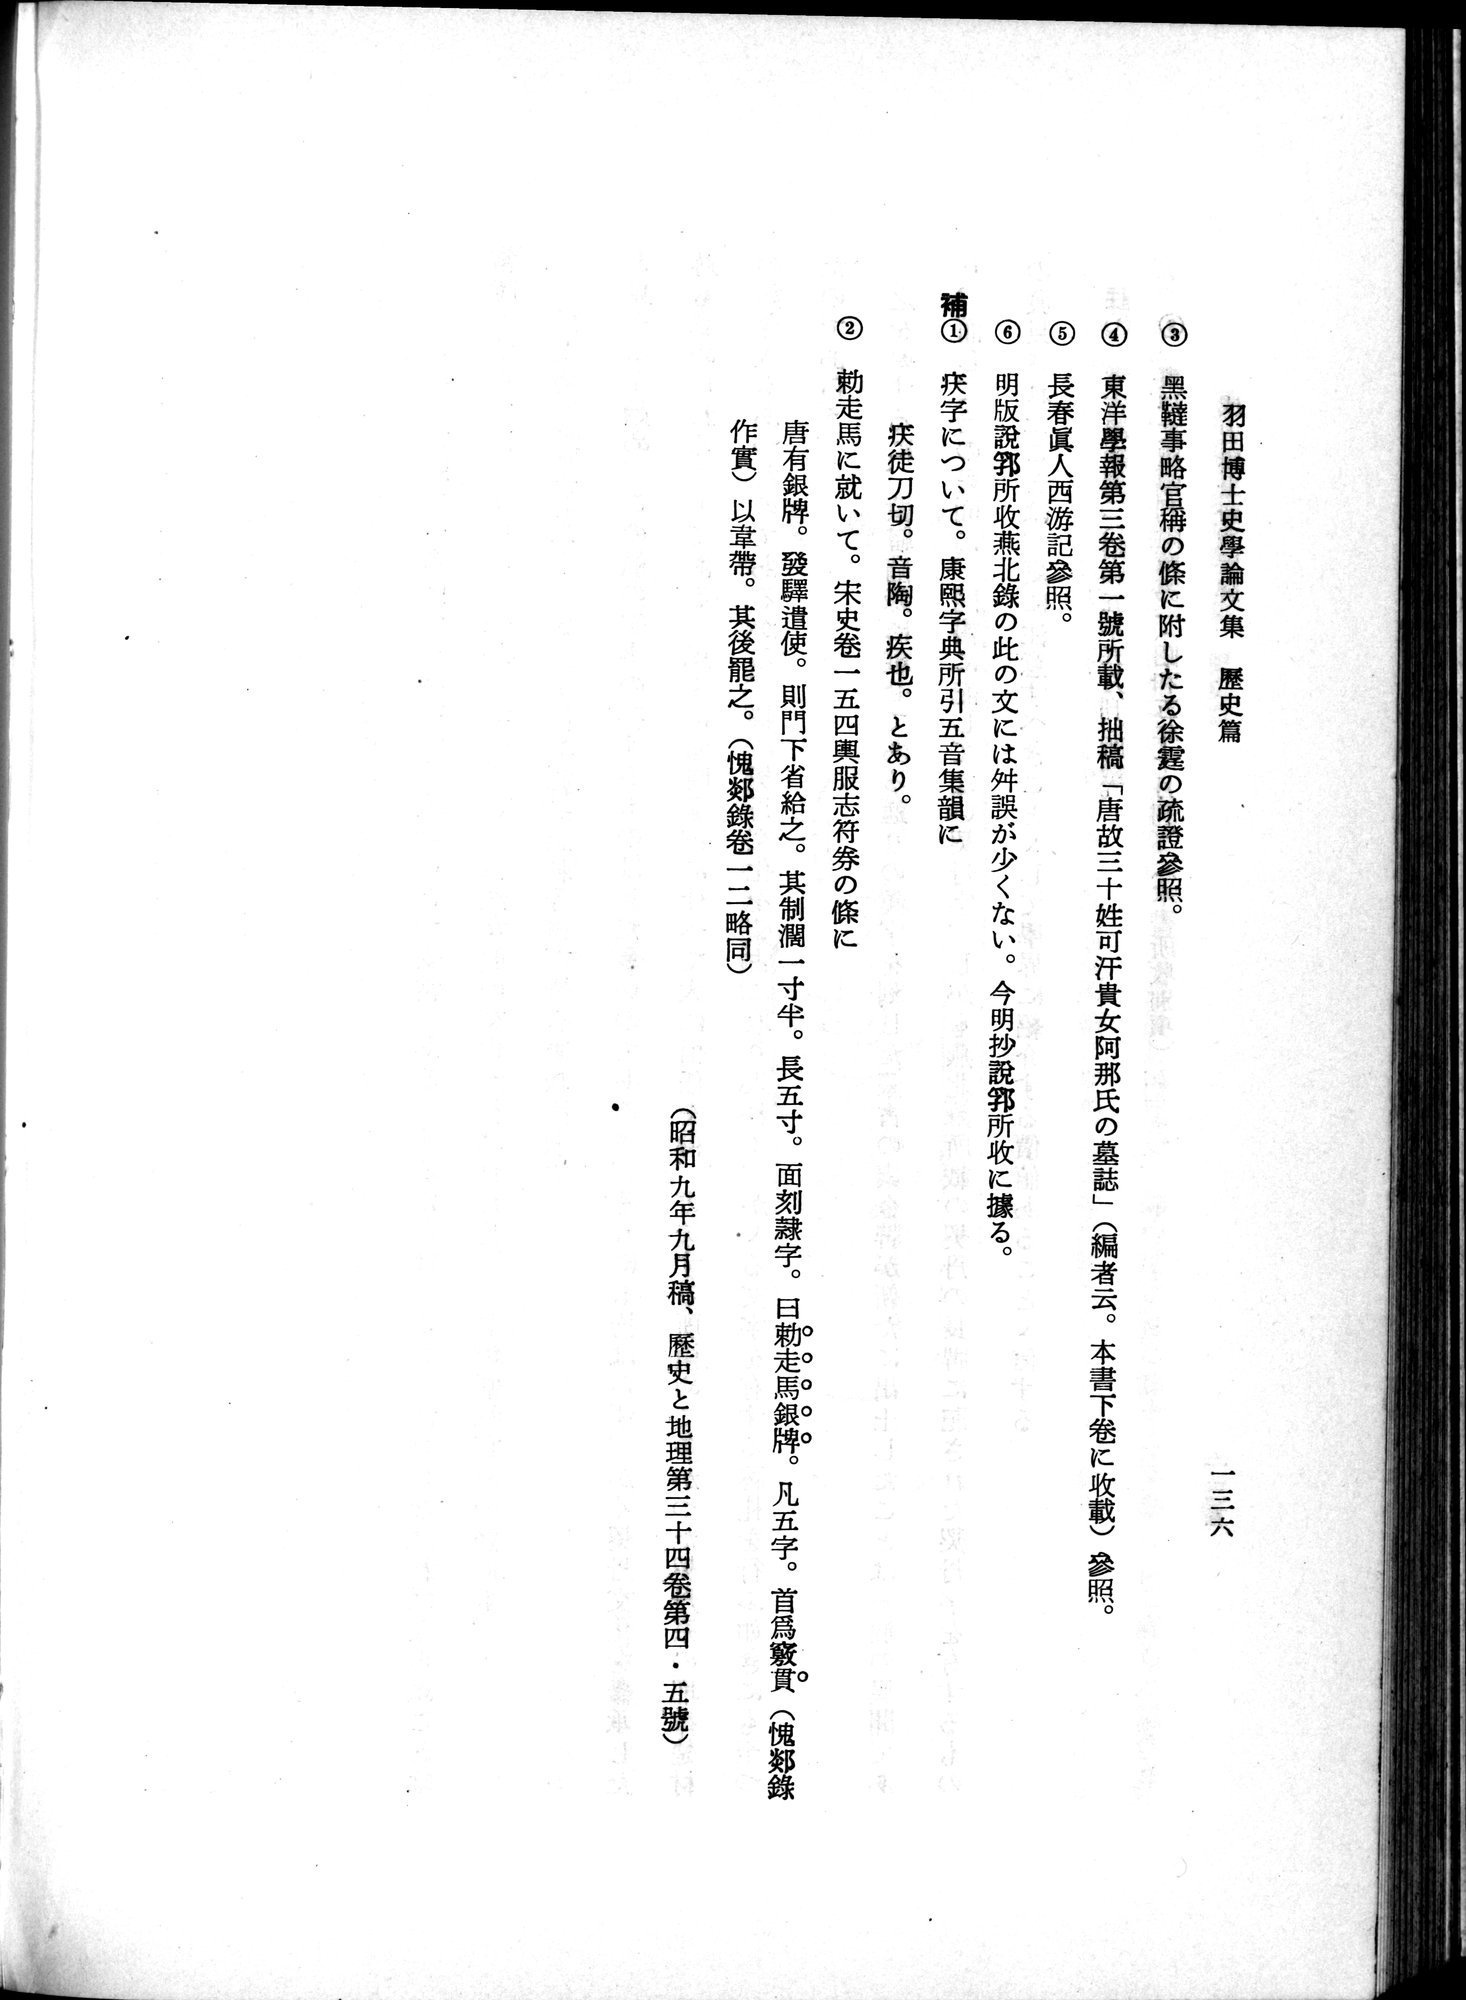 羽田博士史学論文集 : vol.1 / Page 174 (Grayscale High Resolution Image)